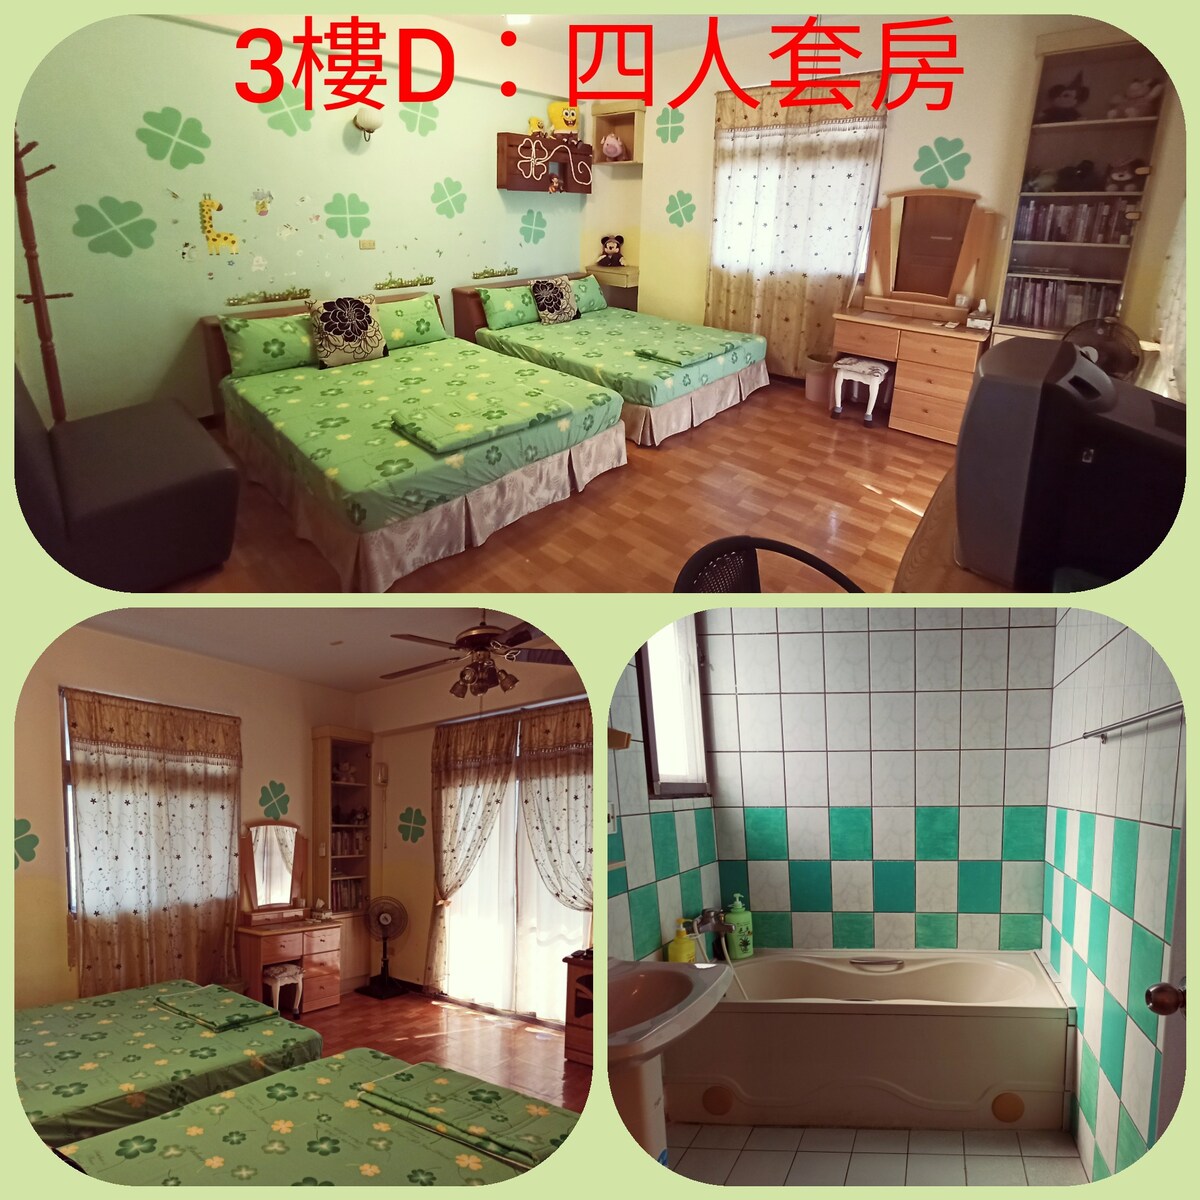 D:花蓮幸運草美崙的家民宿，綠色四人套房，靠近七星潭花蓮市區，平價又乾淨